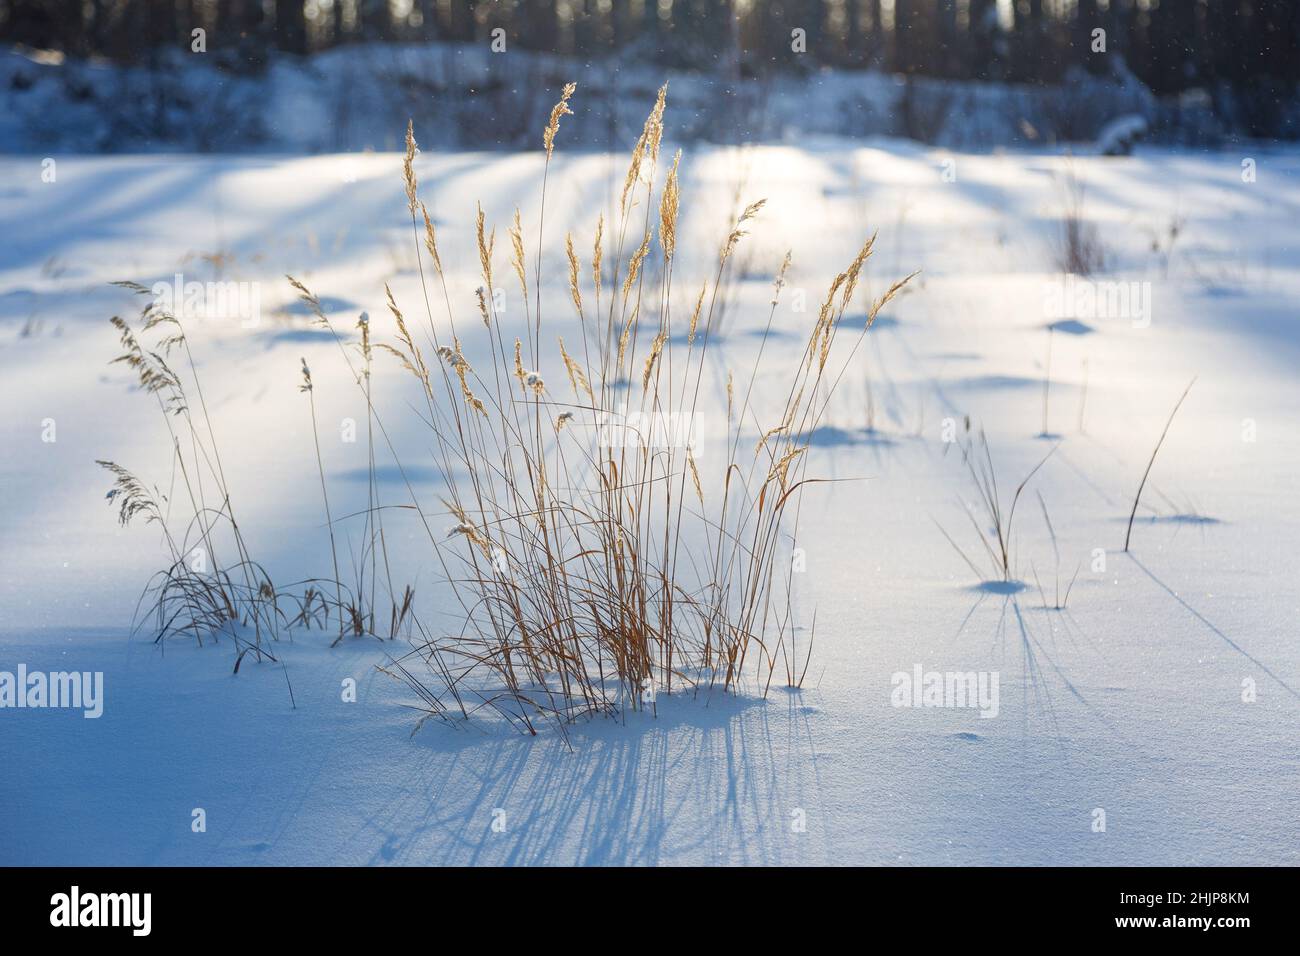 Vergilbtes Gras stielt im Januar auf dem Schnee. Nahaufnahme mit unscharfem Hintergrund. Stockfoto